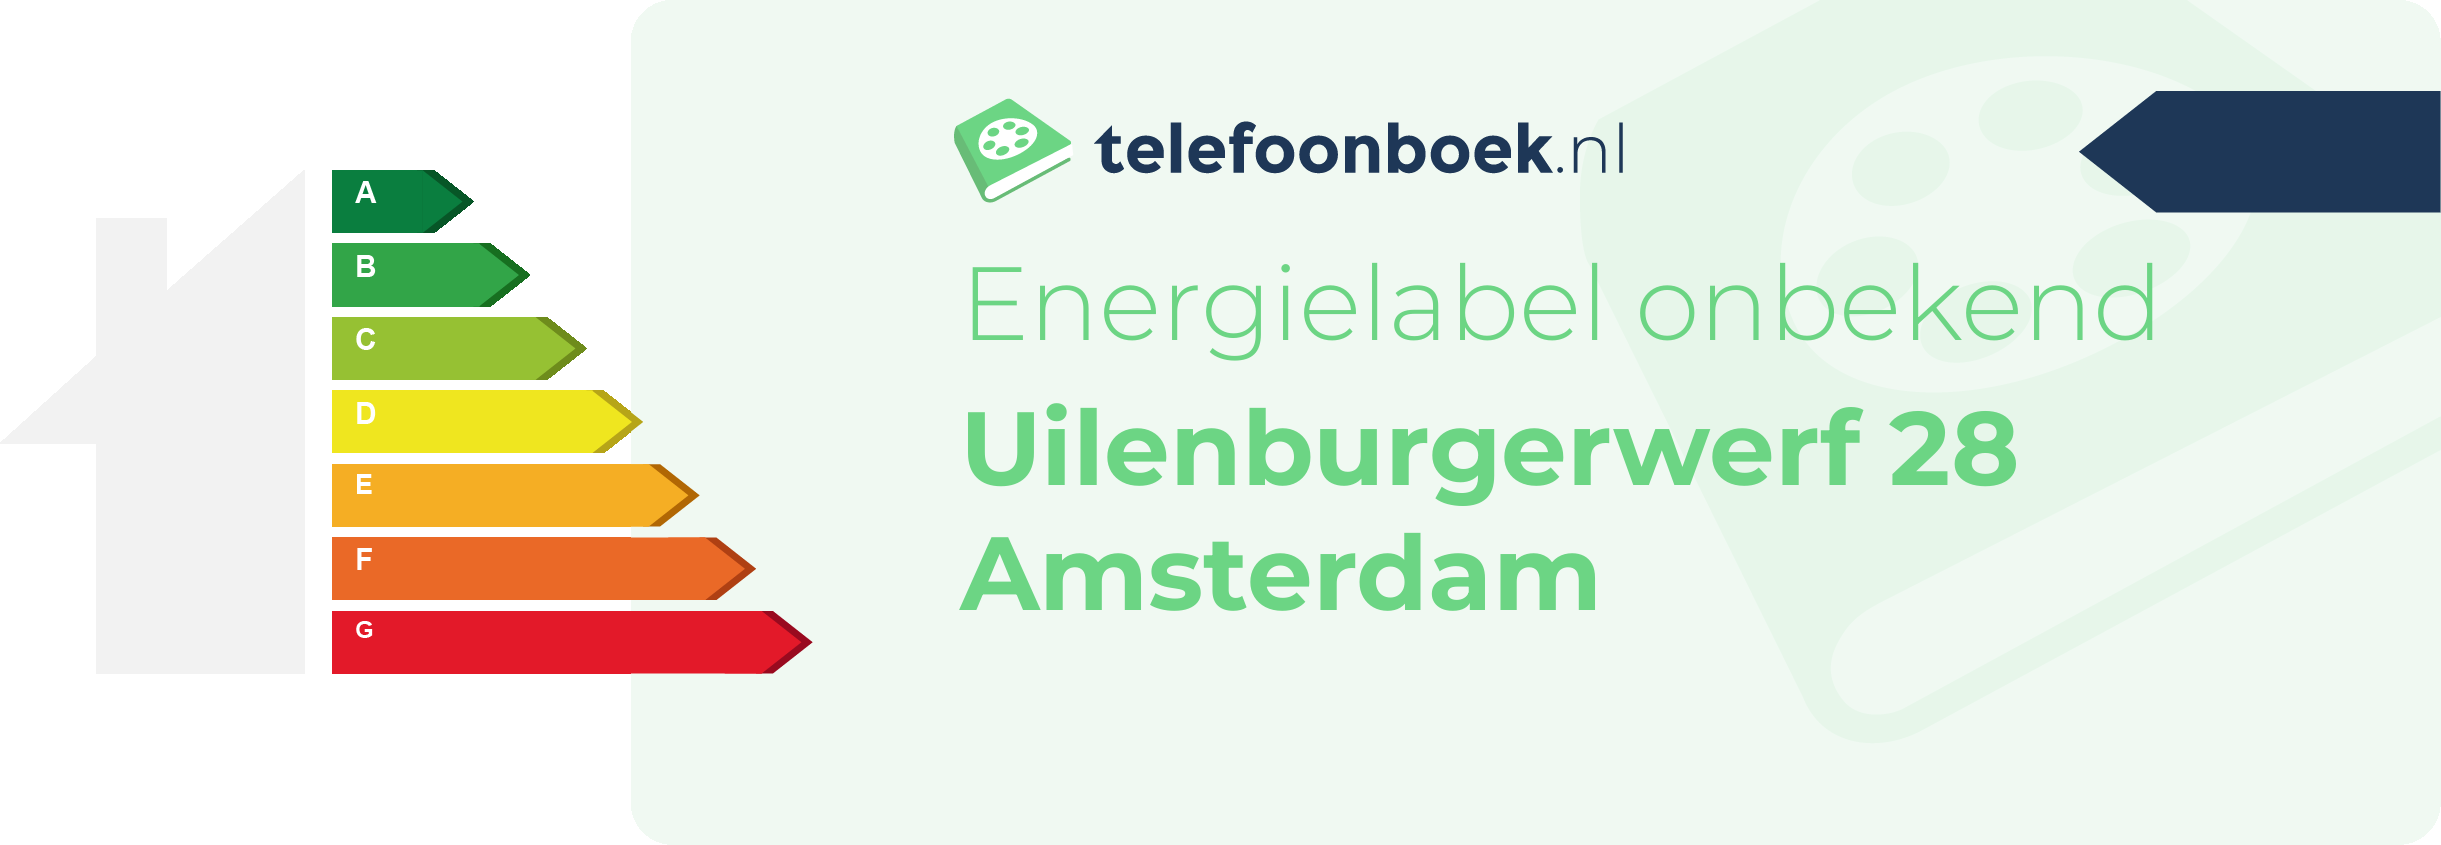 Energielabel Uilenburgerwerf 28 Amsterdam